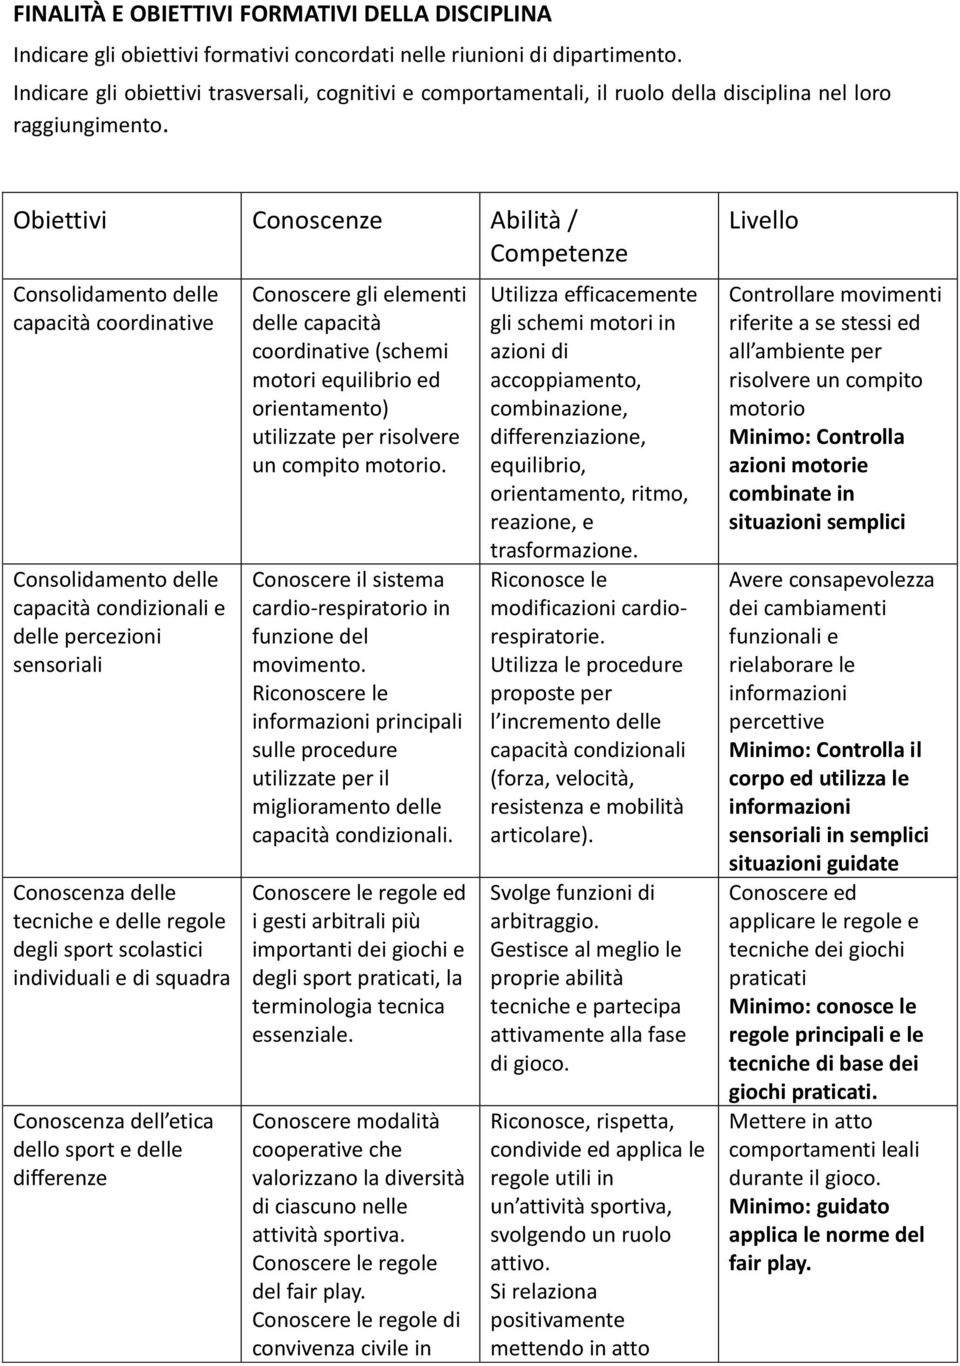 Obiettivi Conoscenze Abilità / Competenze Consolidamento delle capacità coordinative Consolidamento delle capacità condizionali e delle percezioni sensoriali Conoscenza delle tecniche e delle regole